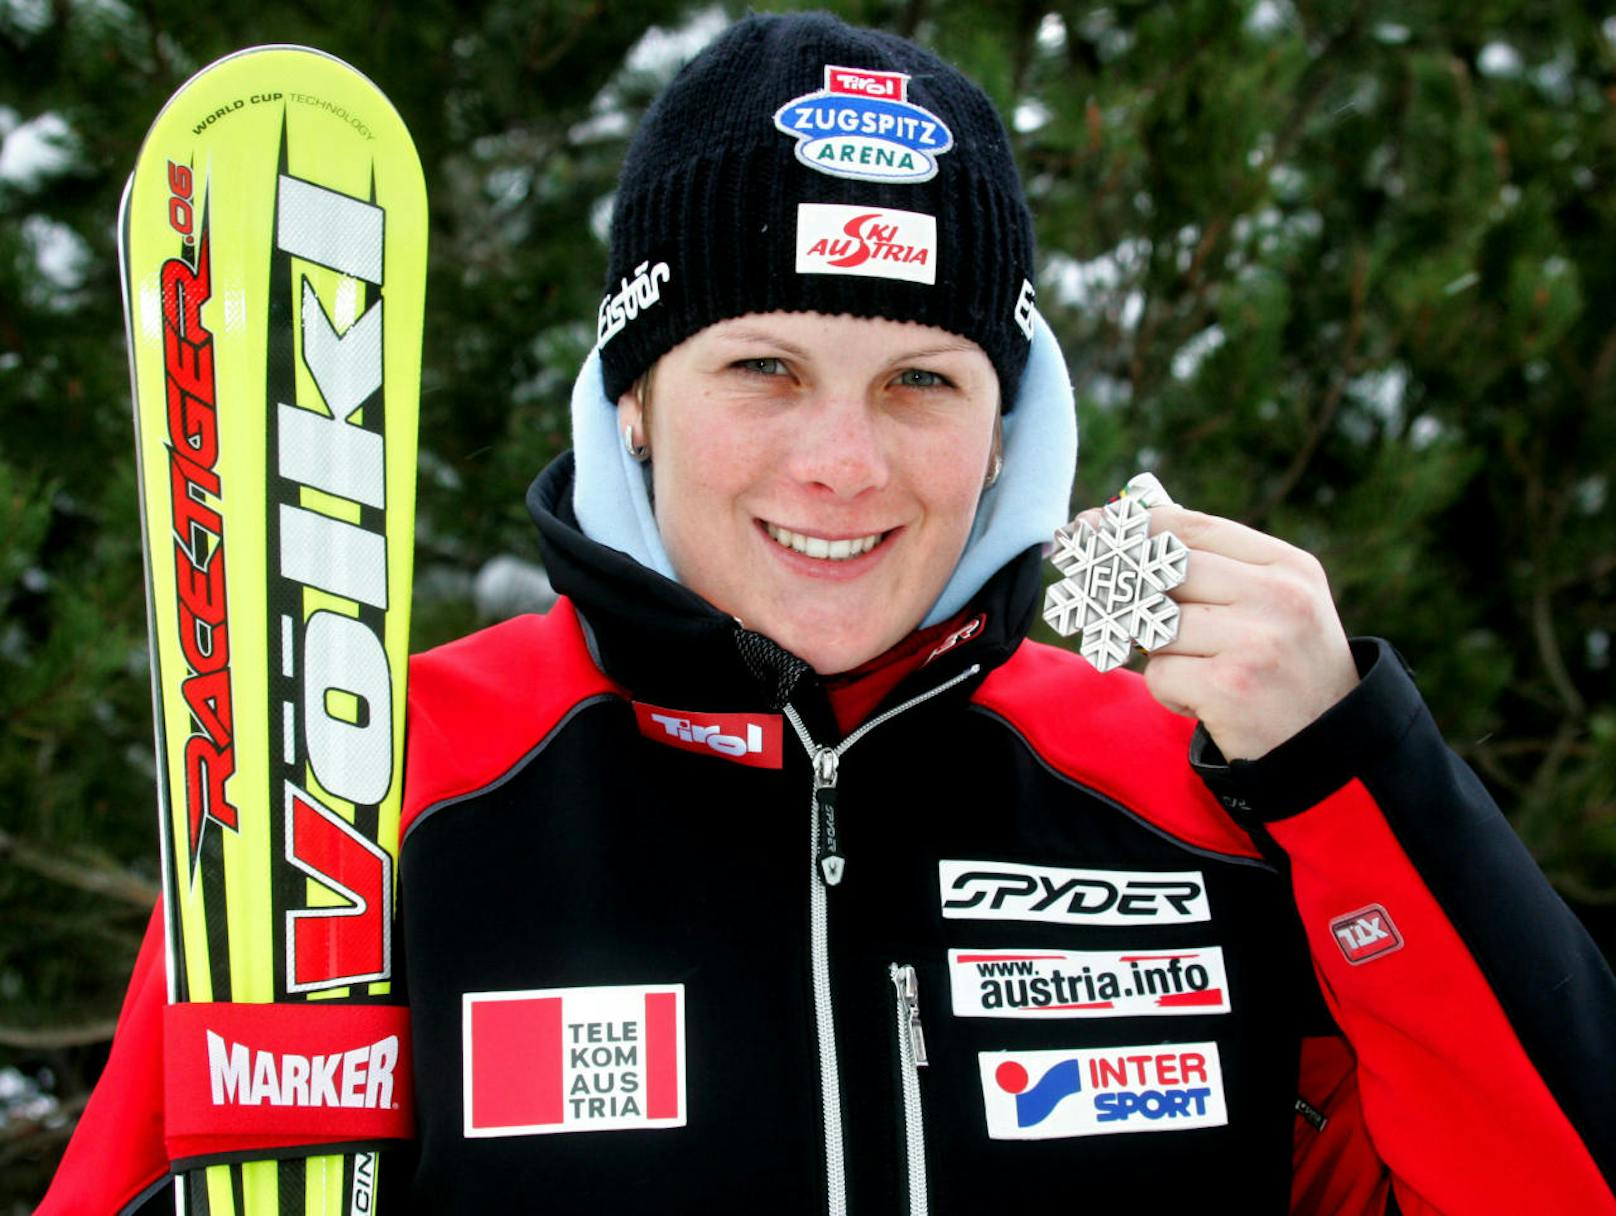 <b>Platz 7: Nicole Hosp (3 x Gold, 3 x Silber, 3 x Bronze)</b>
Auch Hosp liegt im Medaillen-Ranking dank ÖSV-Team im Spitzenfeld. 2013 (Schladming) und 2015 (Vail/Beaver Creek) gab es Gold, 2005 (Bormio) Silber. Dazu kommen sechs Einzelmedaillen. Einzel-Gold gab es 2007 im RTL von Aare. Silber 2003 (St. Moritz) und 2015 in der Kombi, Bronze 2003 im Slalom, 2007 in der Abfahrt und 2013 in der Super-Kombi.